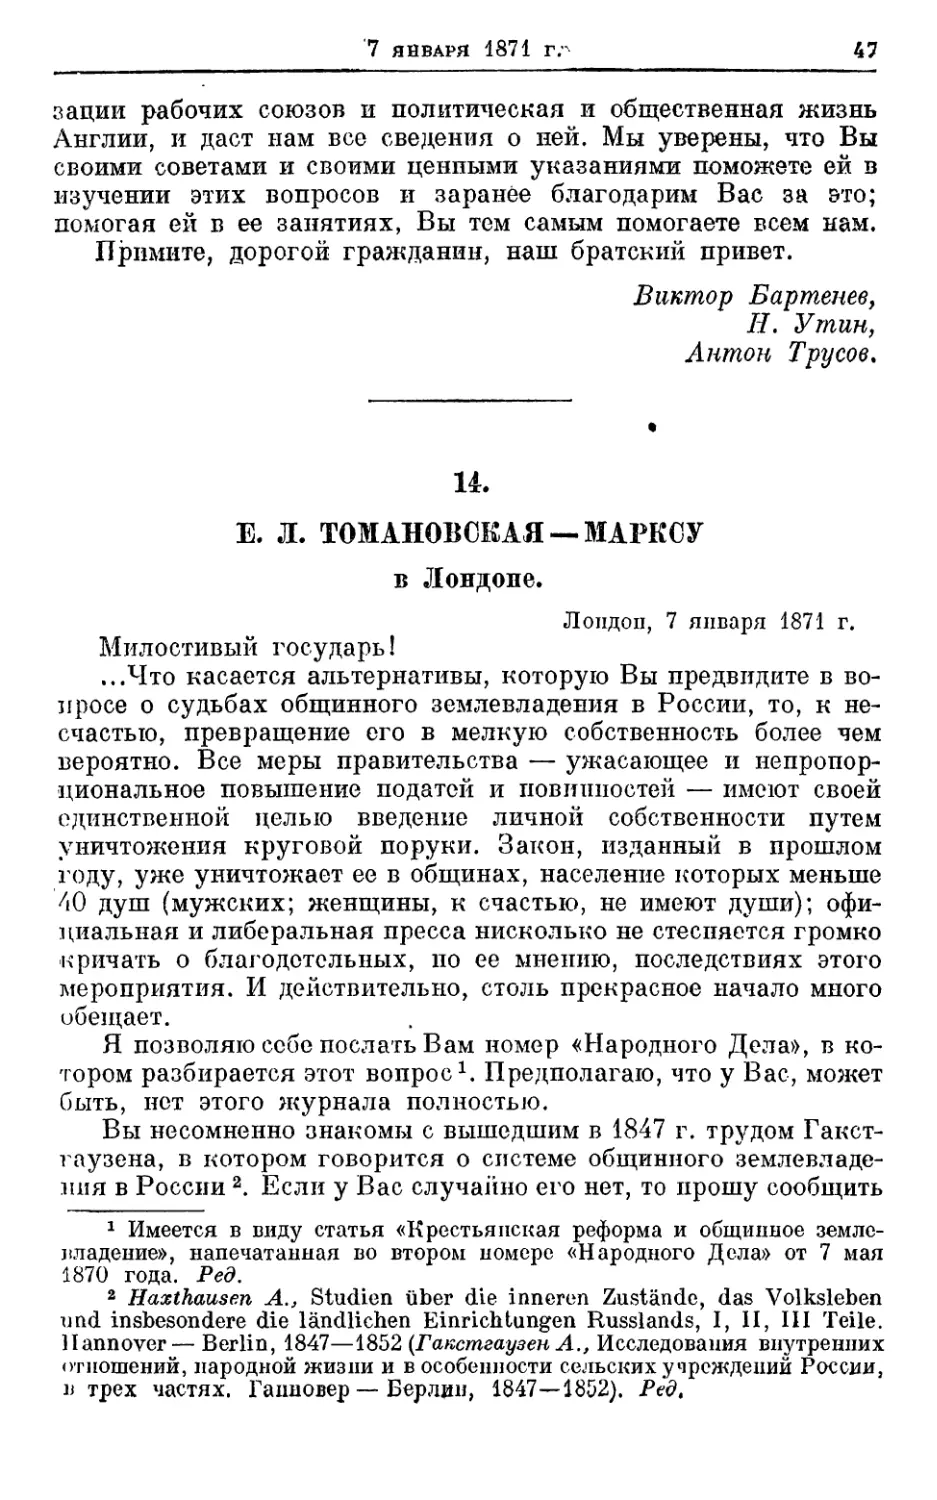 14. Томановская — Марксу, 7 января 1871г